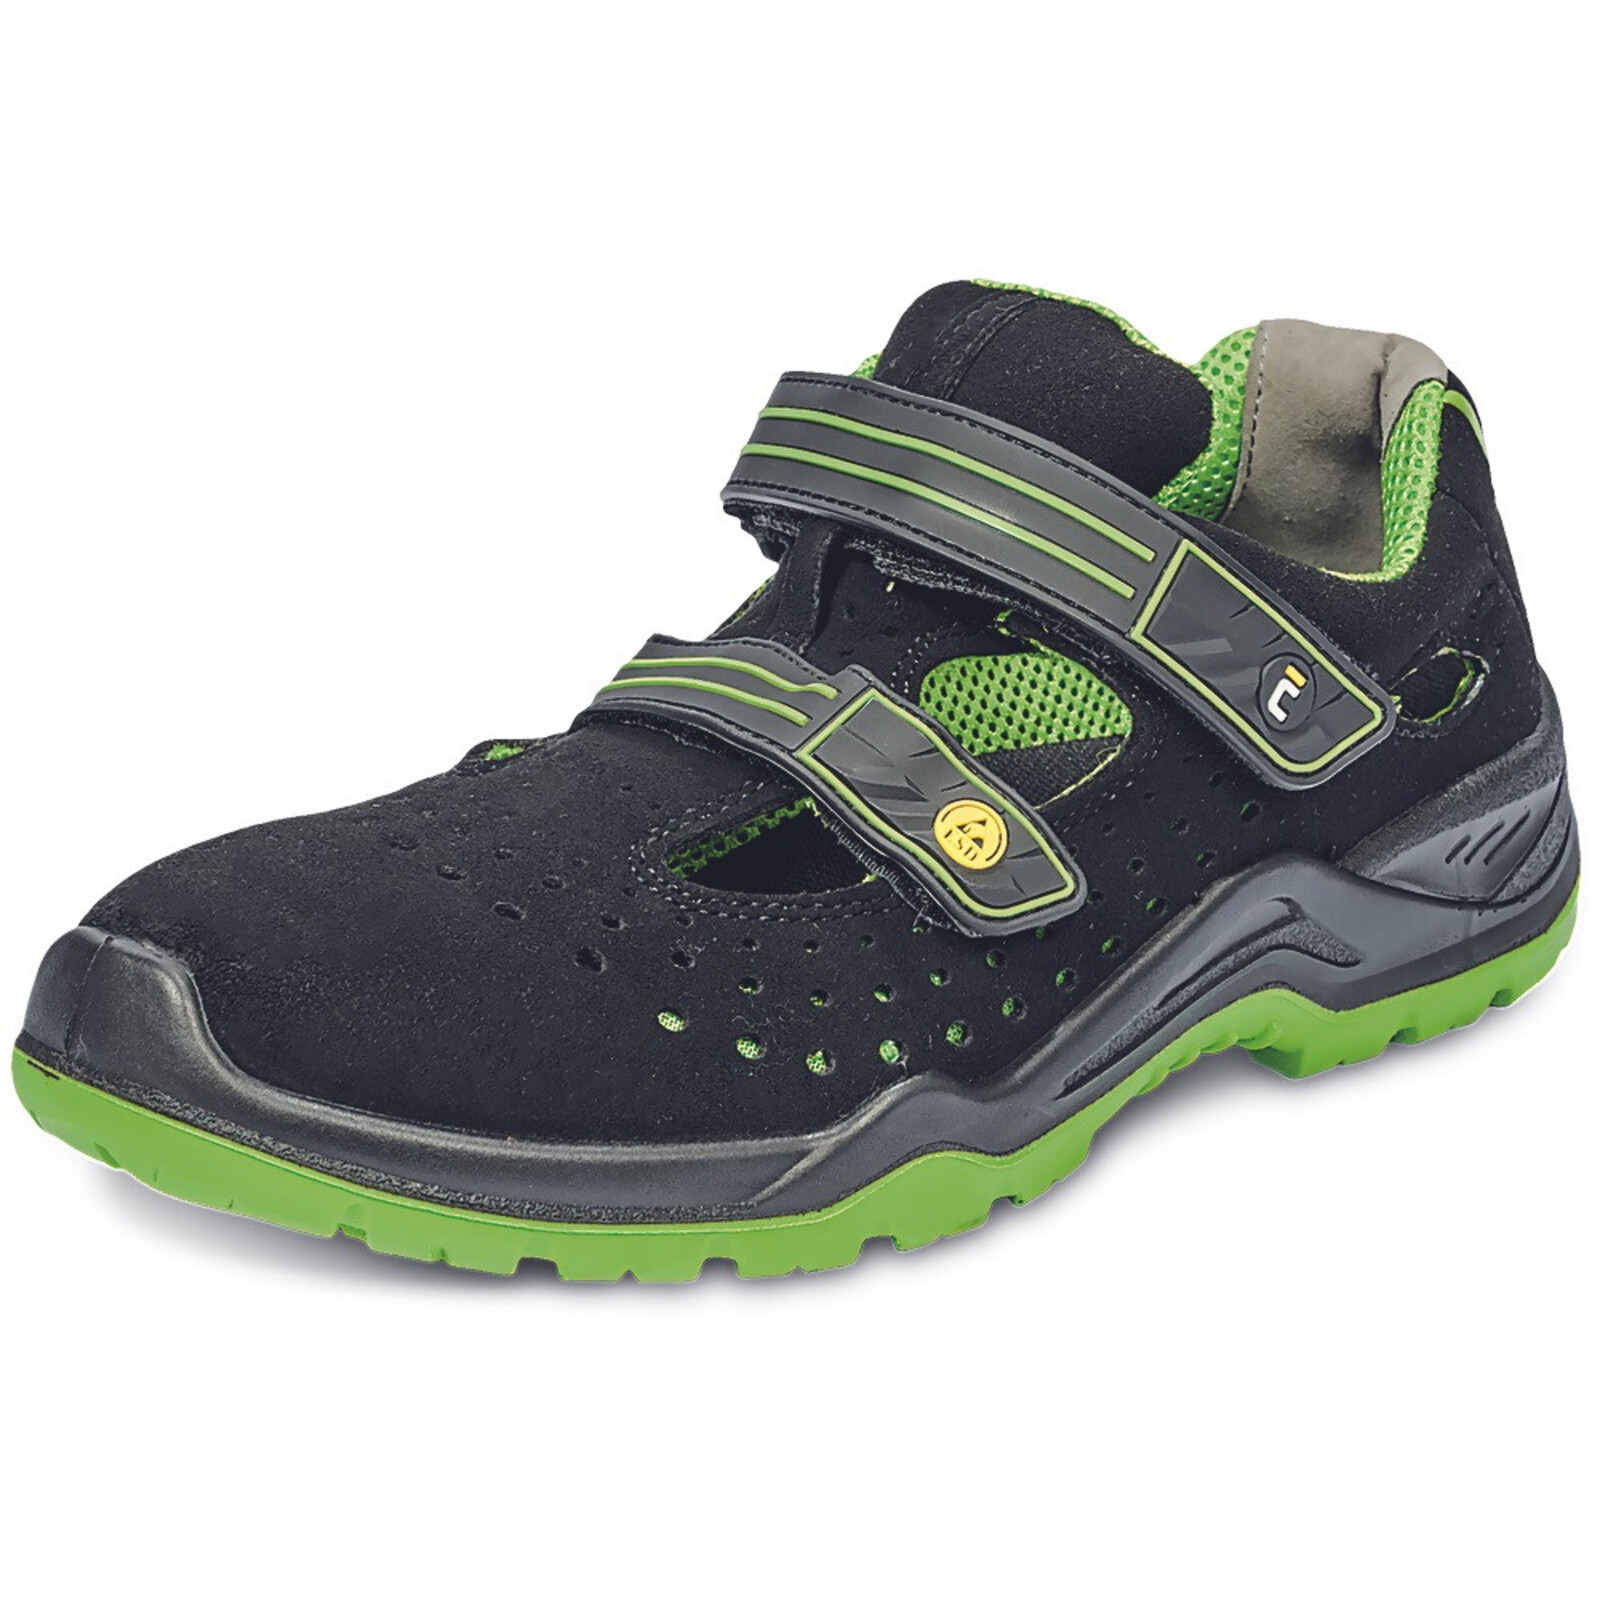 Bezpečnostné sandále Cerva Halwill MF ESD S1P SRC - veľkosť: 44, farba: čierna/zelená